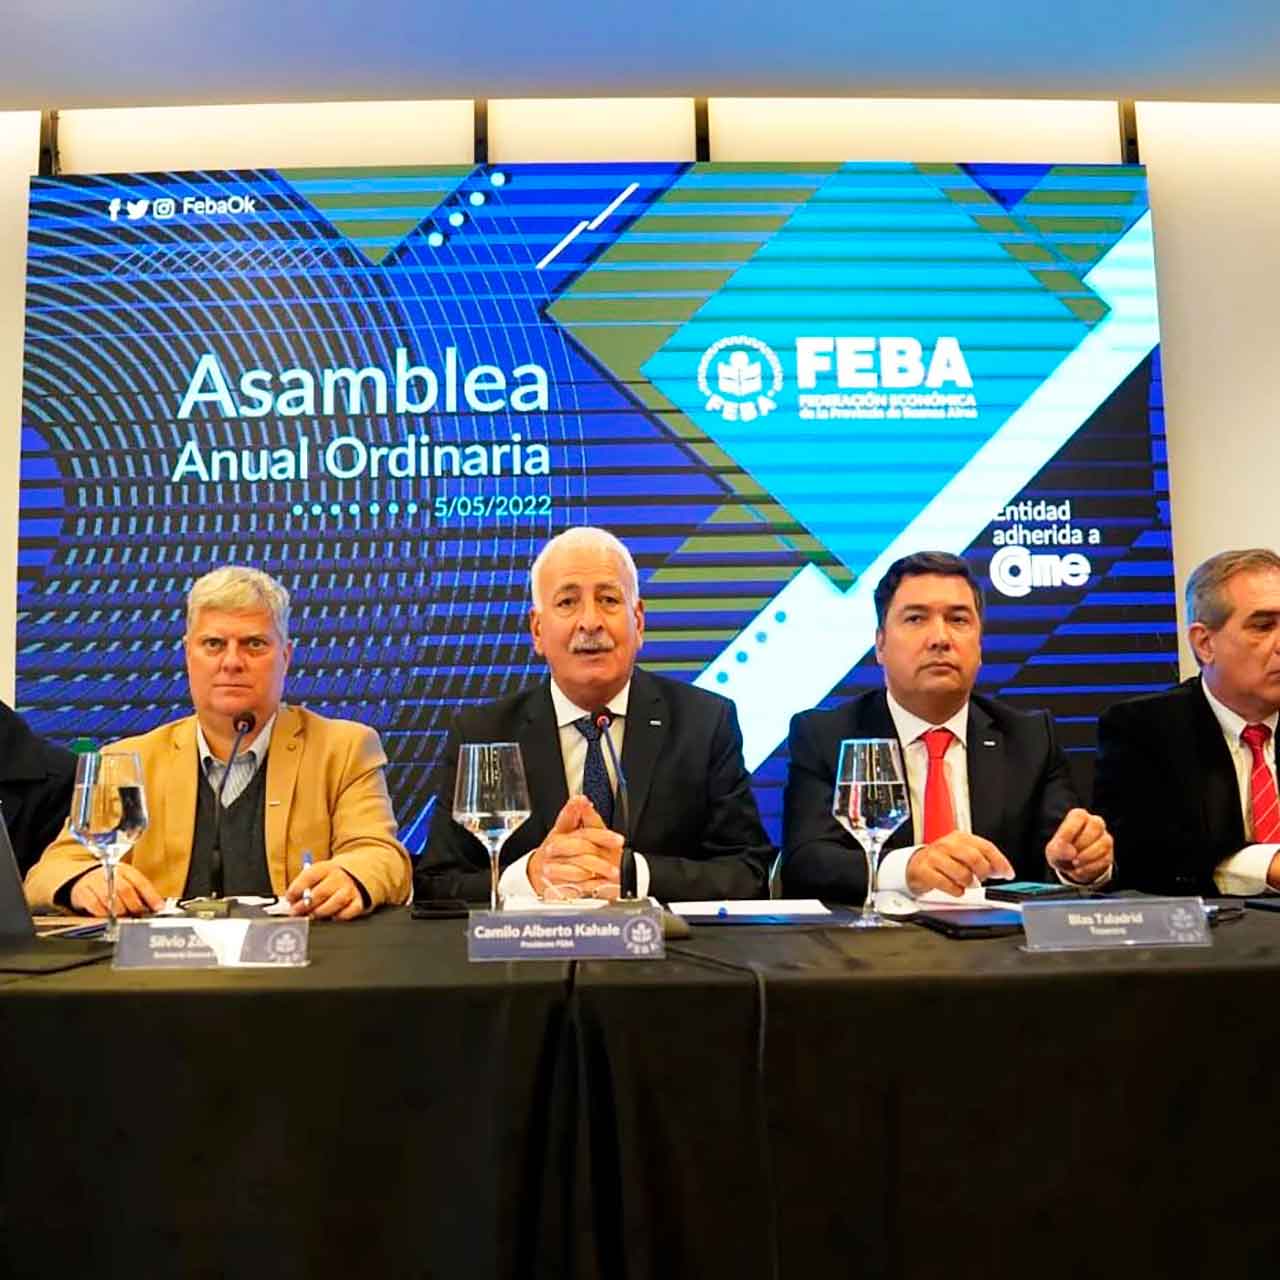 FEBA Asamblea Anual Ordinaria 2022